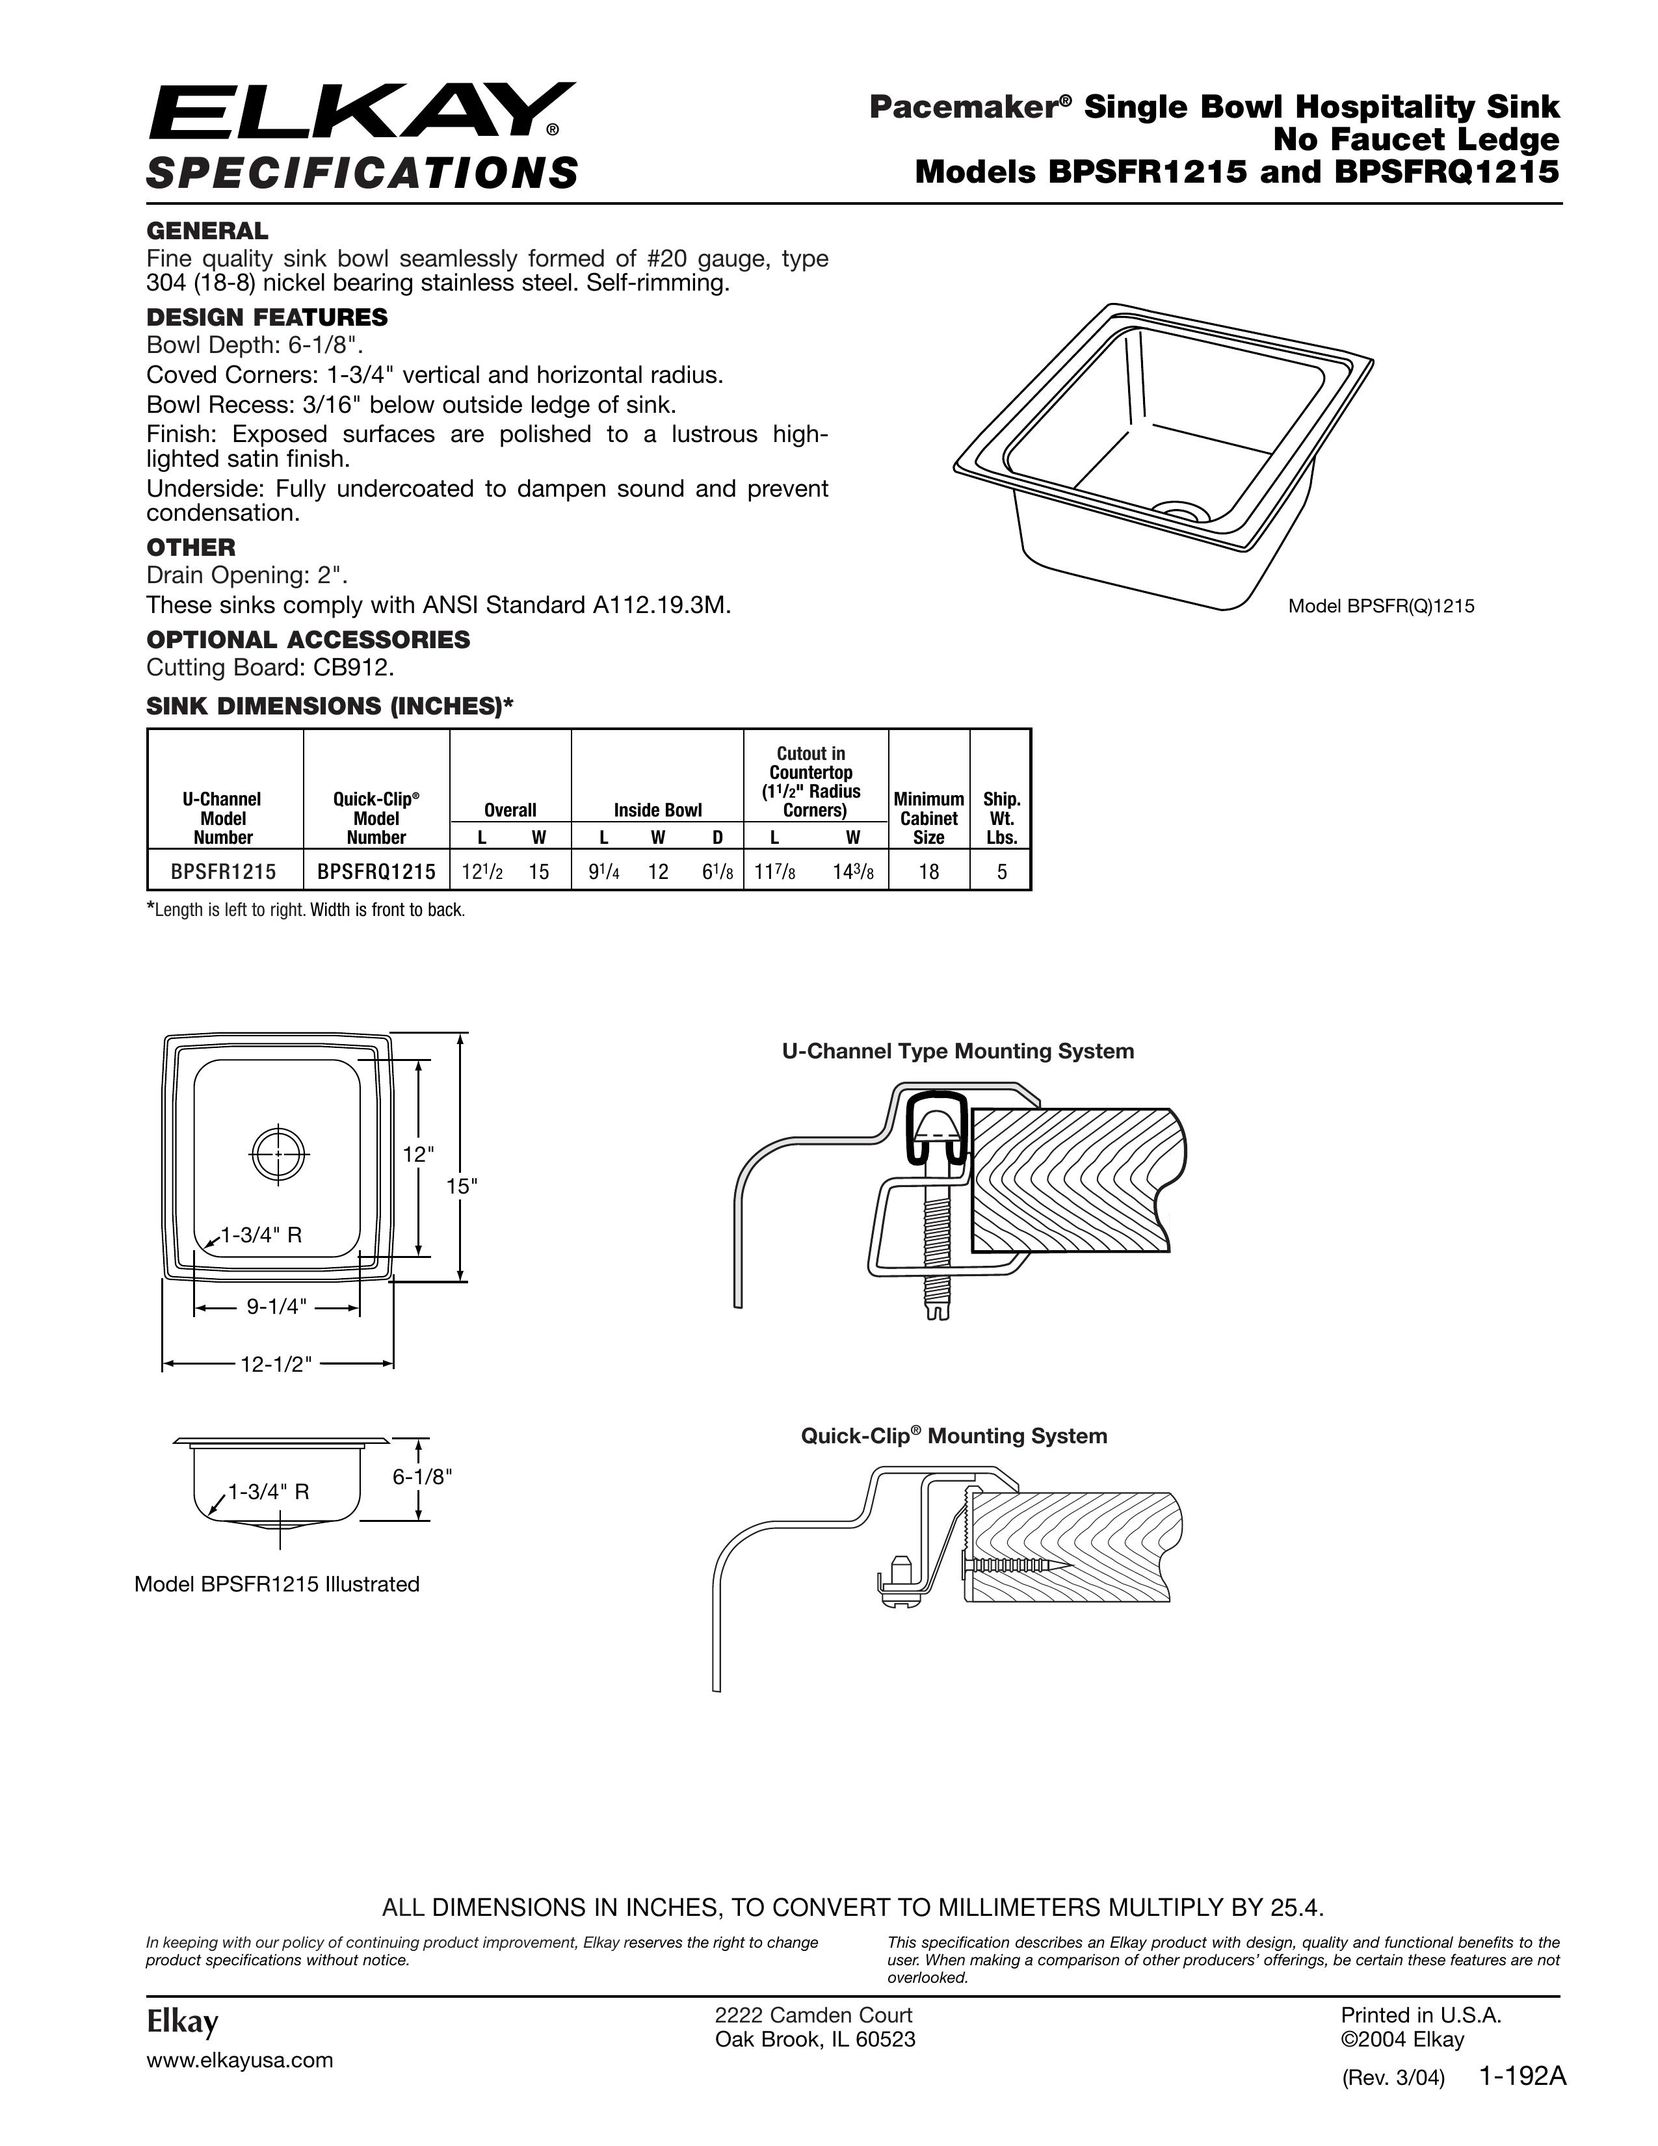 Elkay BPSFR1215 Indoor Furnishings User Manual